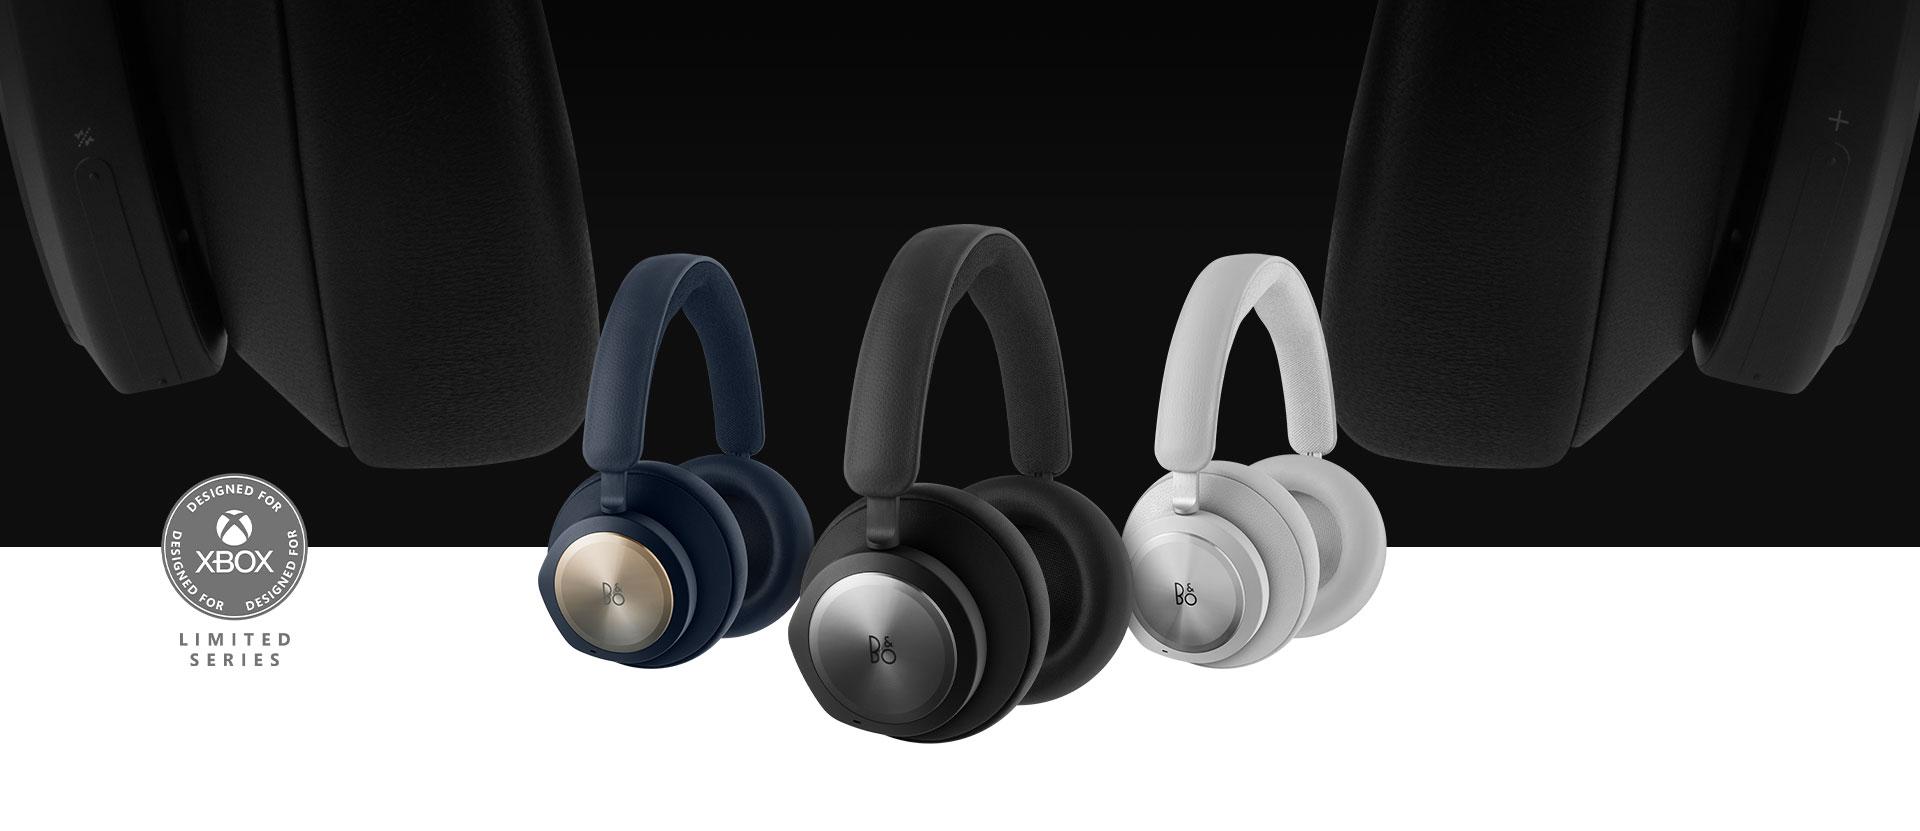 Diseñados para Xbox, cascos Bang & Olufsen negros al frente con los cascos grises y azul marino al lado